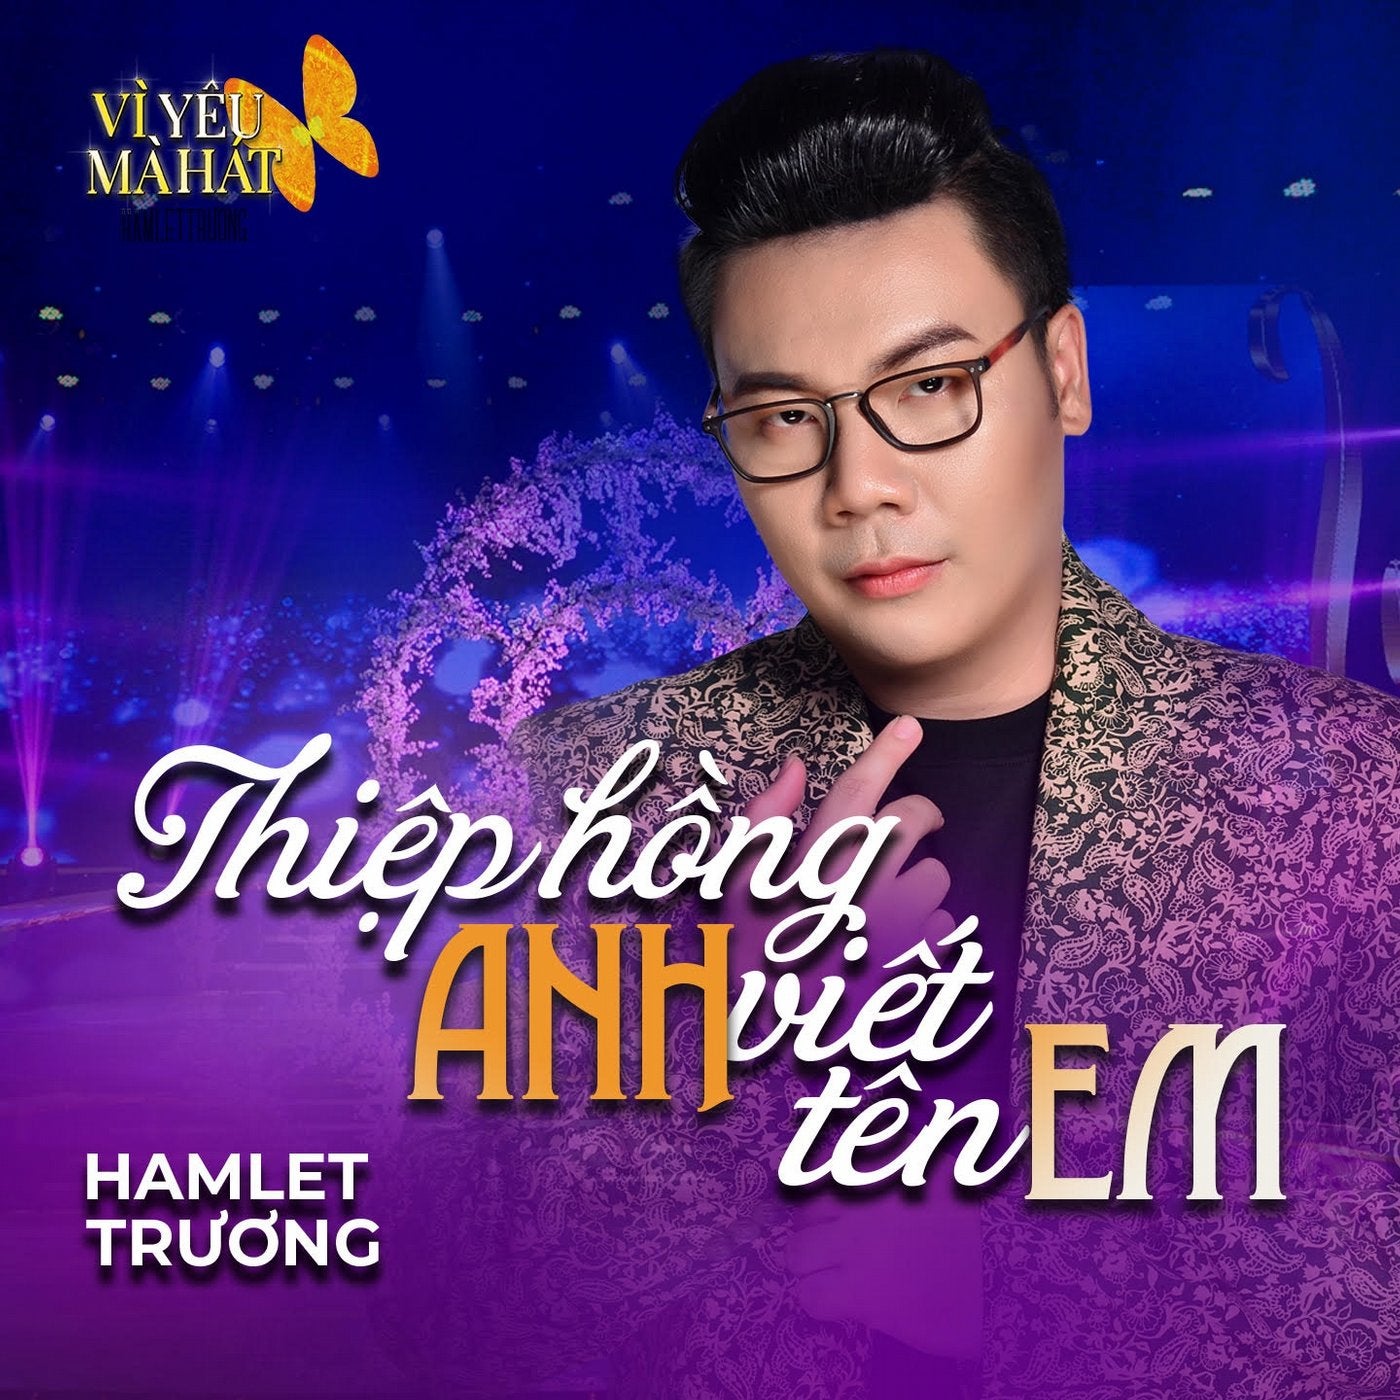 Thiep Hong Anh Viet Ten Em (Vi Yeu Ma Hat)